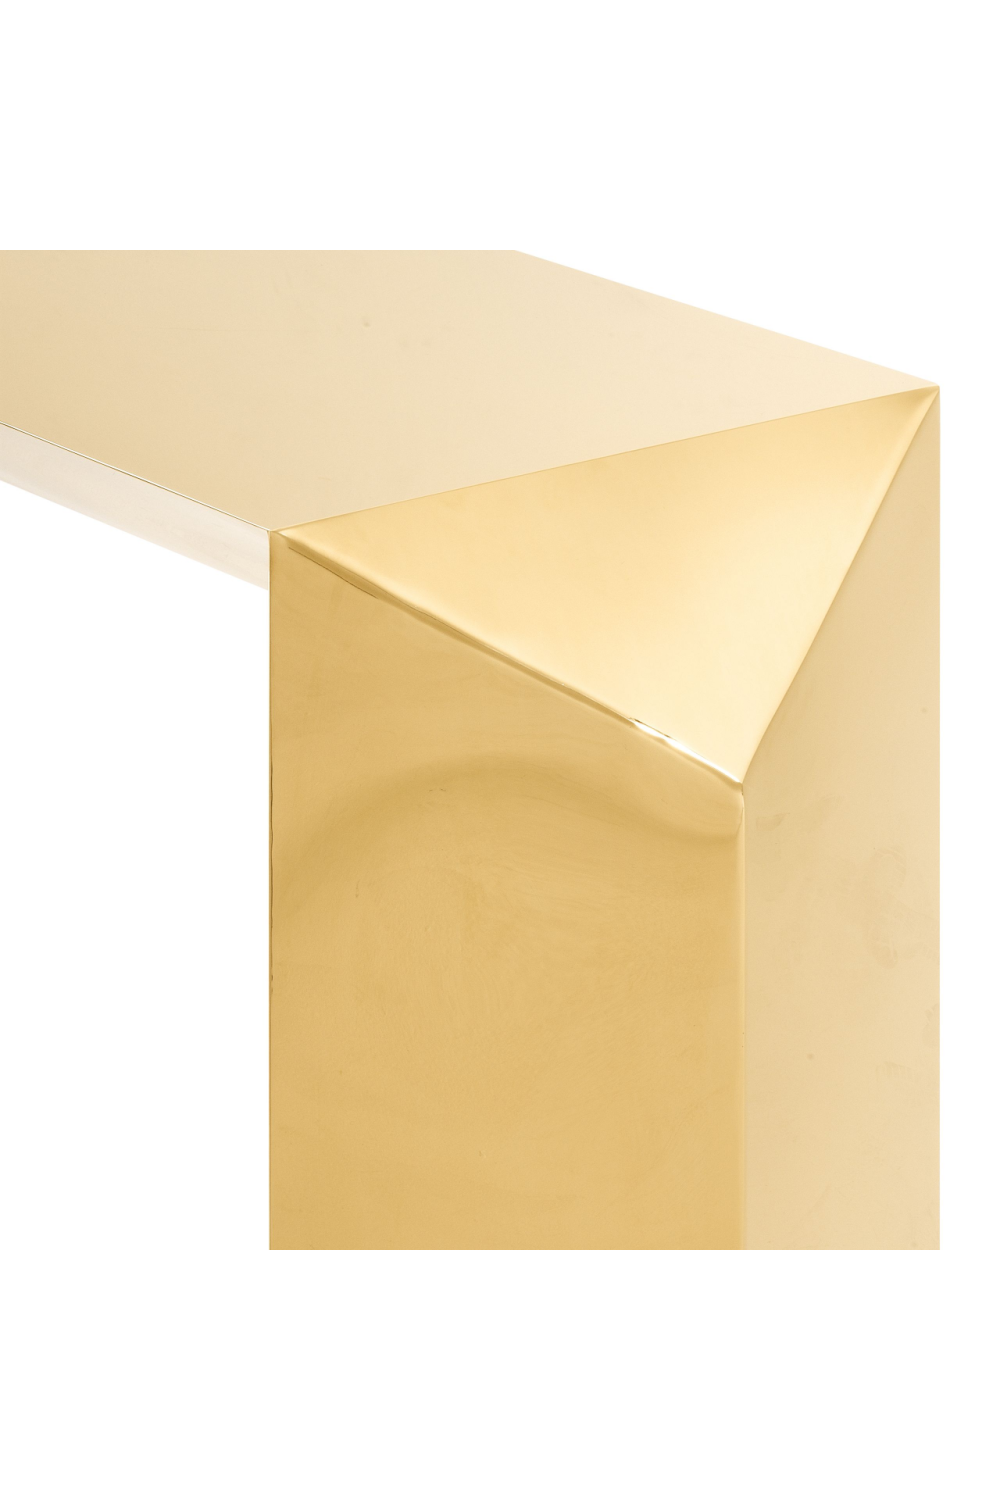 Gold Console Table | Eichholtz Carlow | #1 Eichholtz Retailer